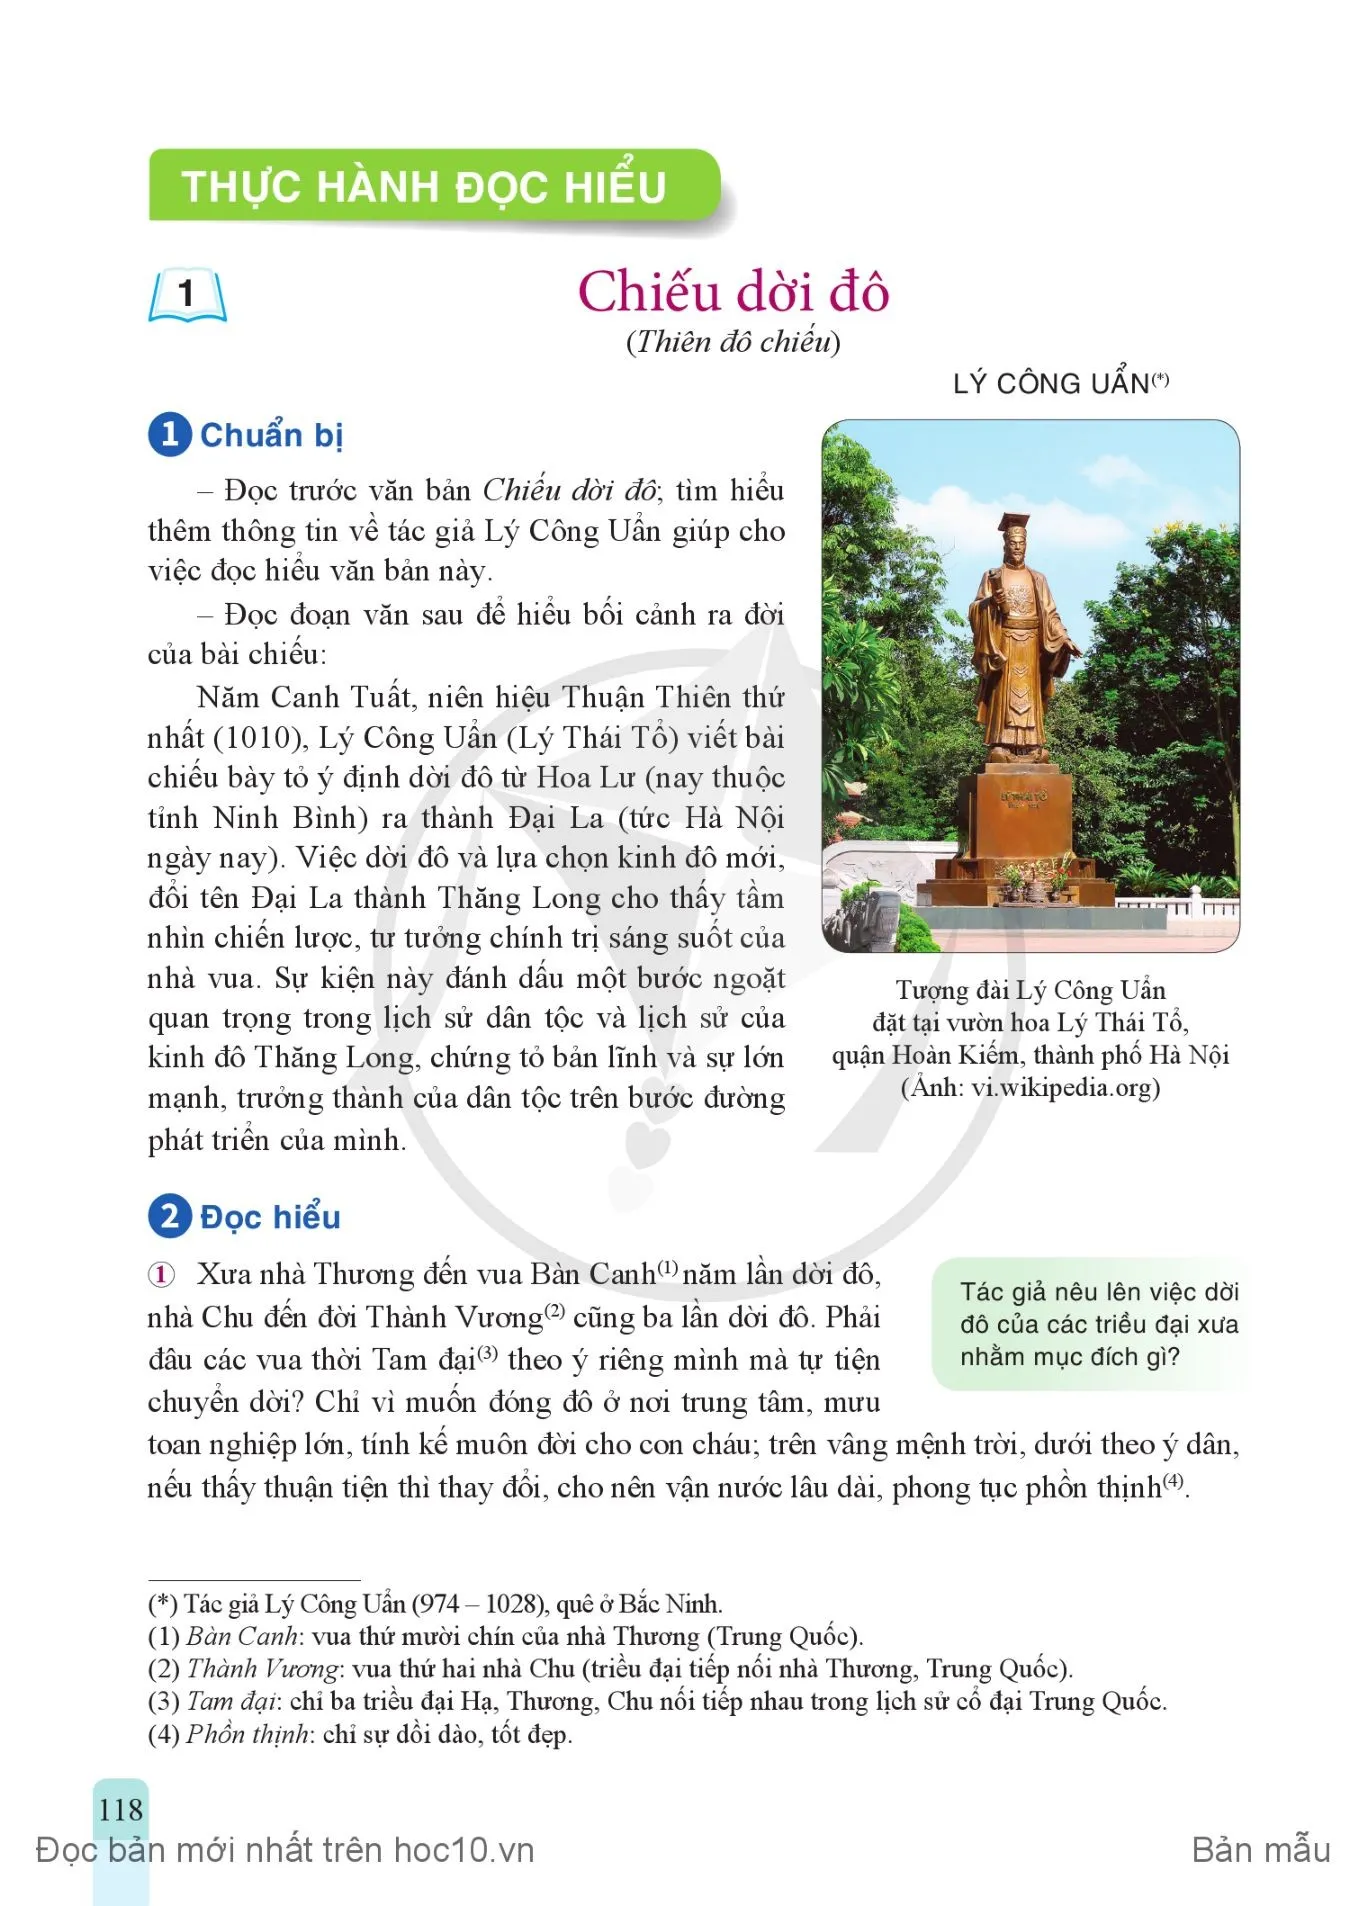 • Thực hành tiếng Việt: Ôn tập về từ Hán Việt, thành ngữ, tục ngữ